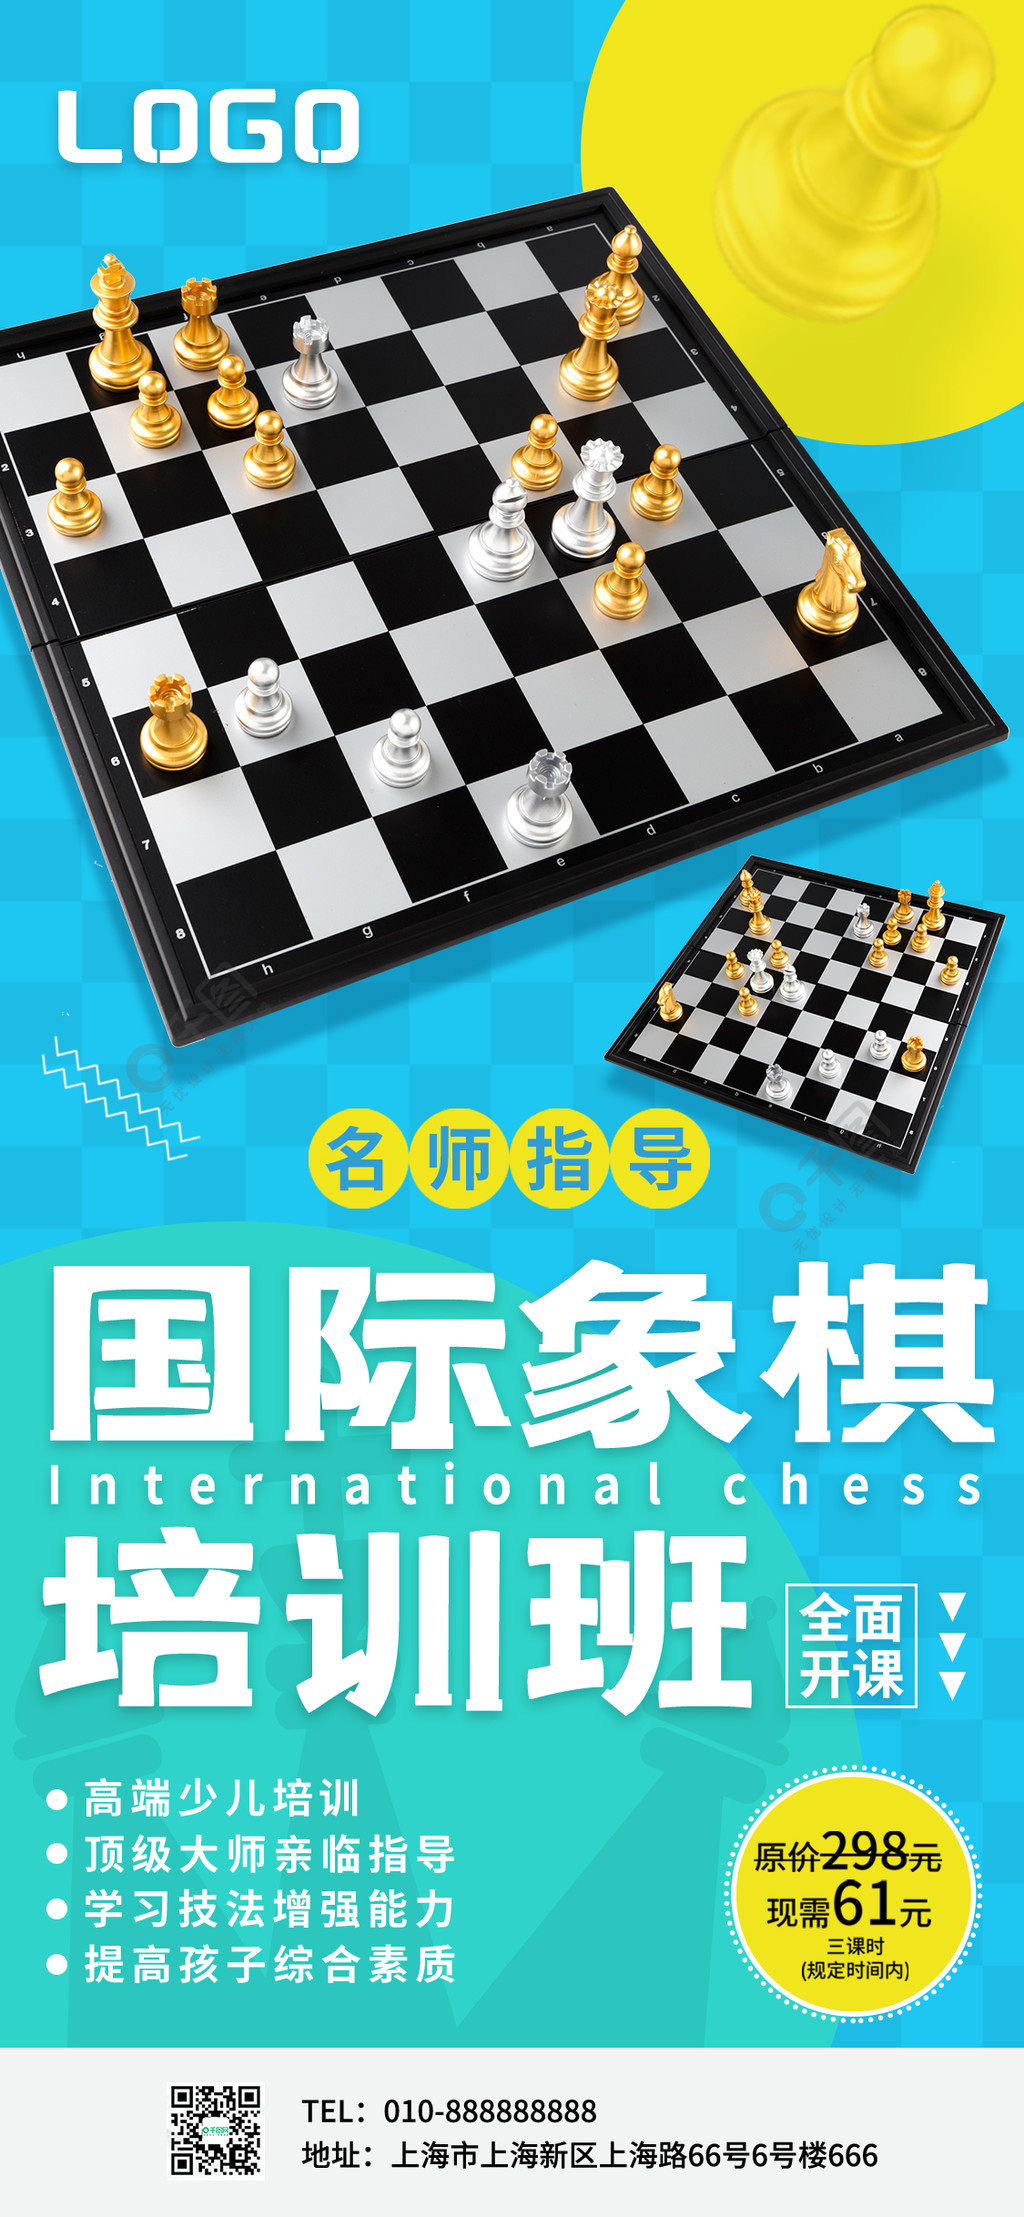 国际象棋教育培训国际象棋培训海报半年前发布